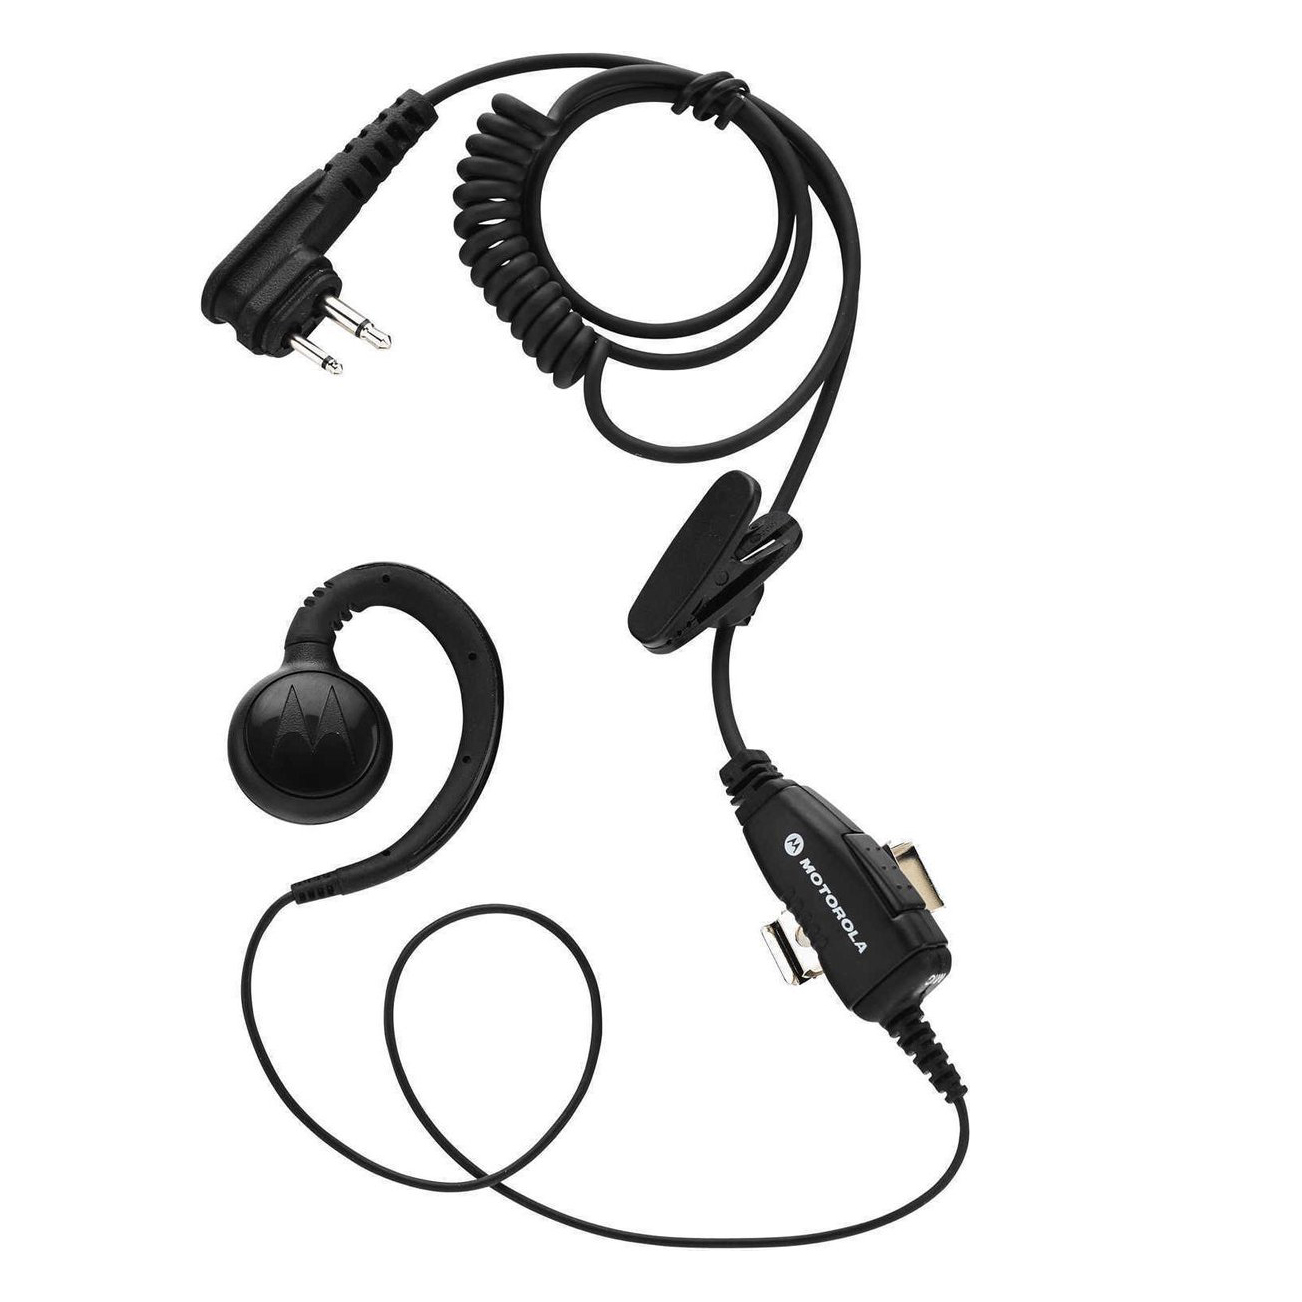 MO-HKLN4604A Swivel earpiece voor de Motorola XT400 portofoon serie.